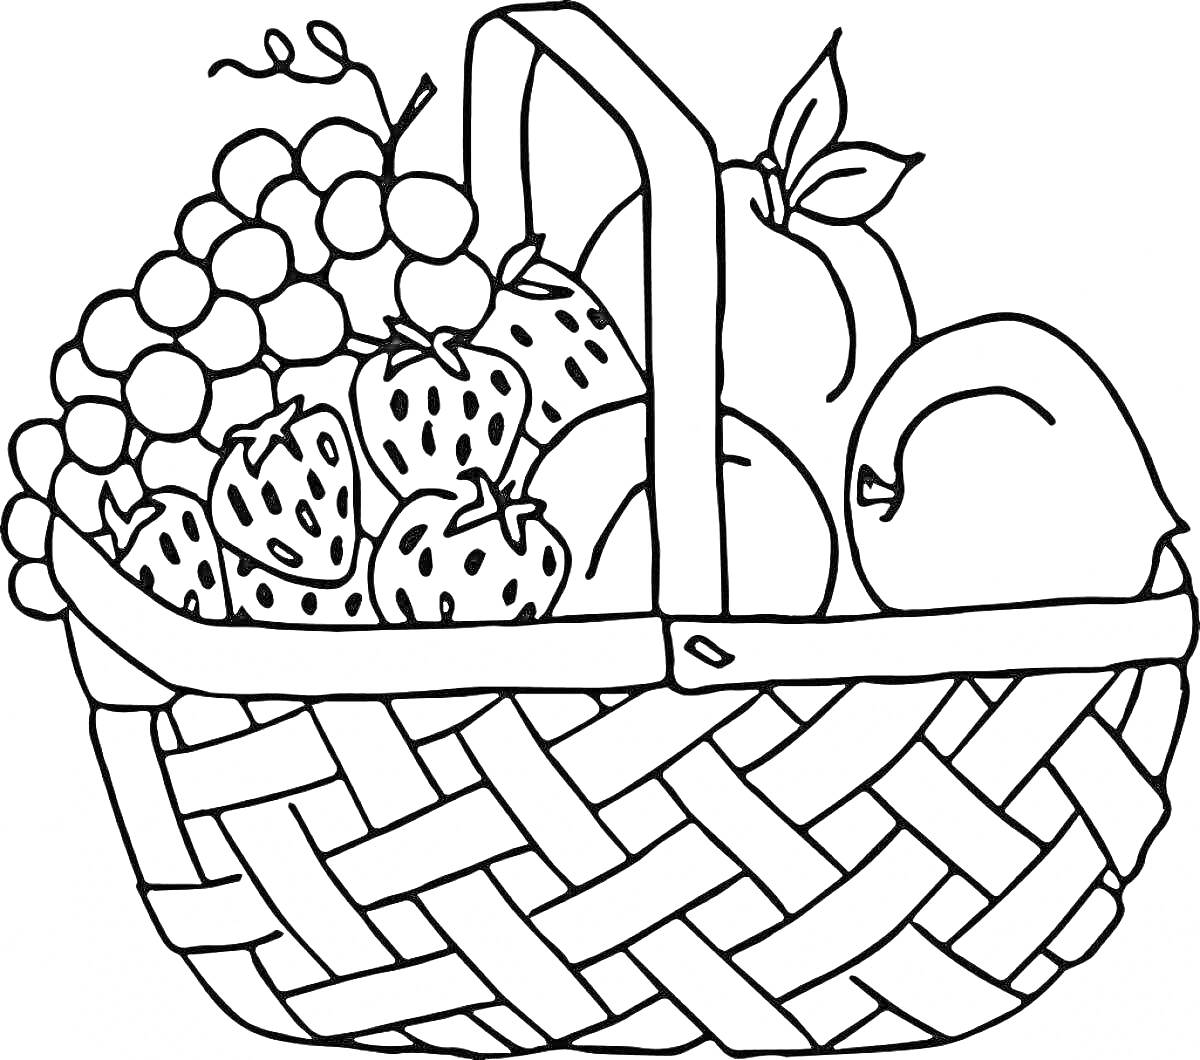 Раскраска Корзинка с виноградом, клубникой, яблоками и персиками